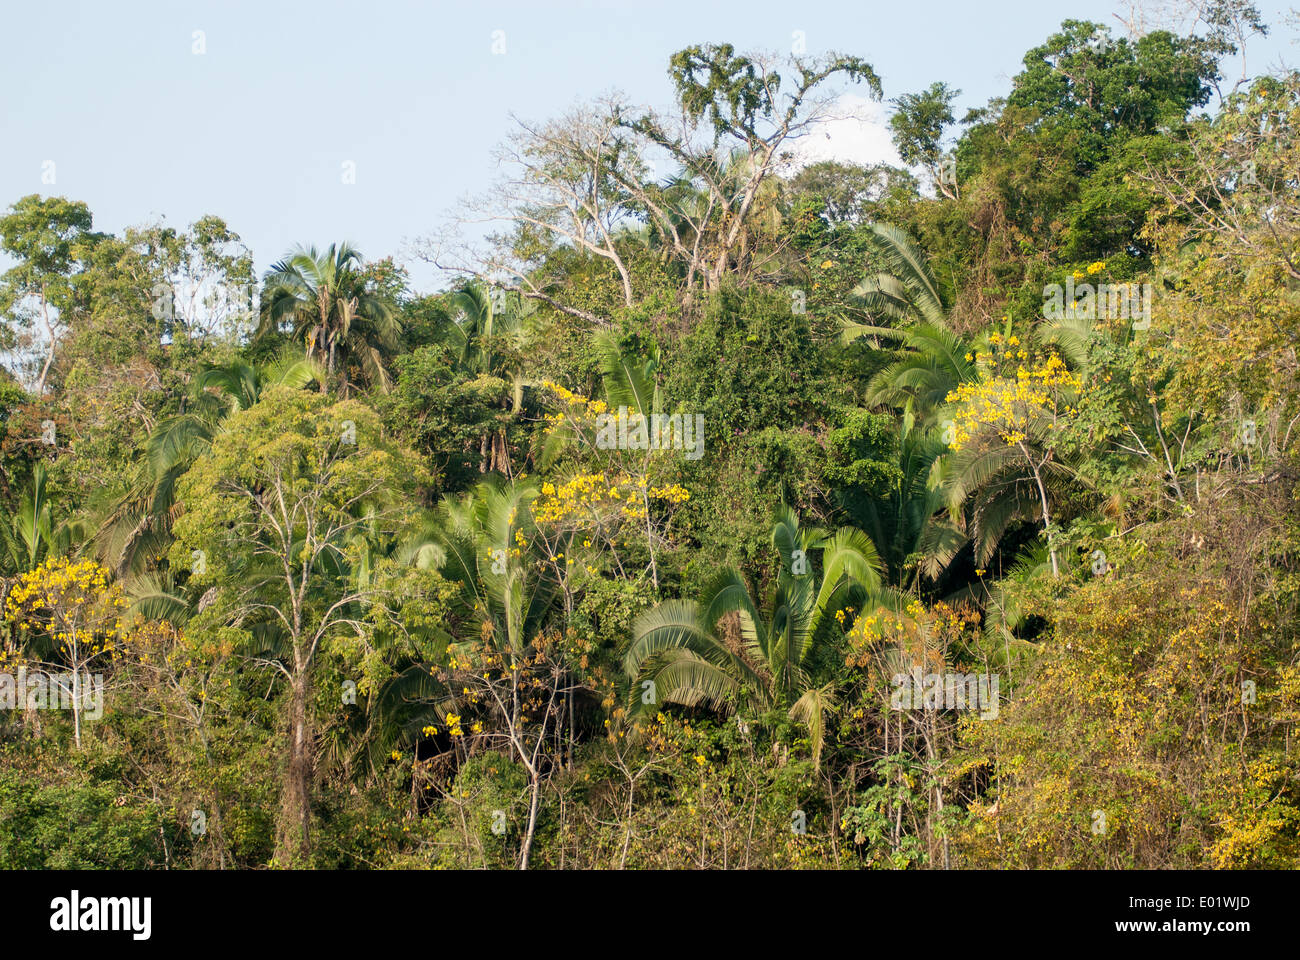 Bundesstaat Para, Brasilien. Biologische Vielfalt des Amazonas-Regenwaldes. Stockfoto